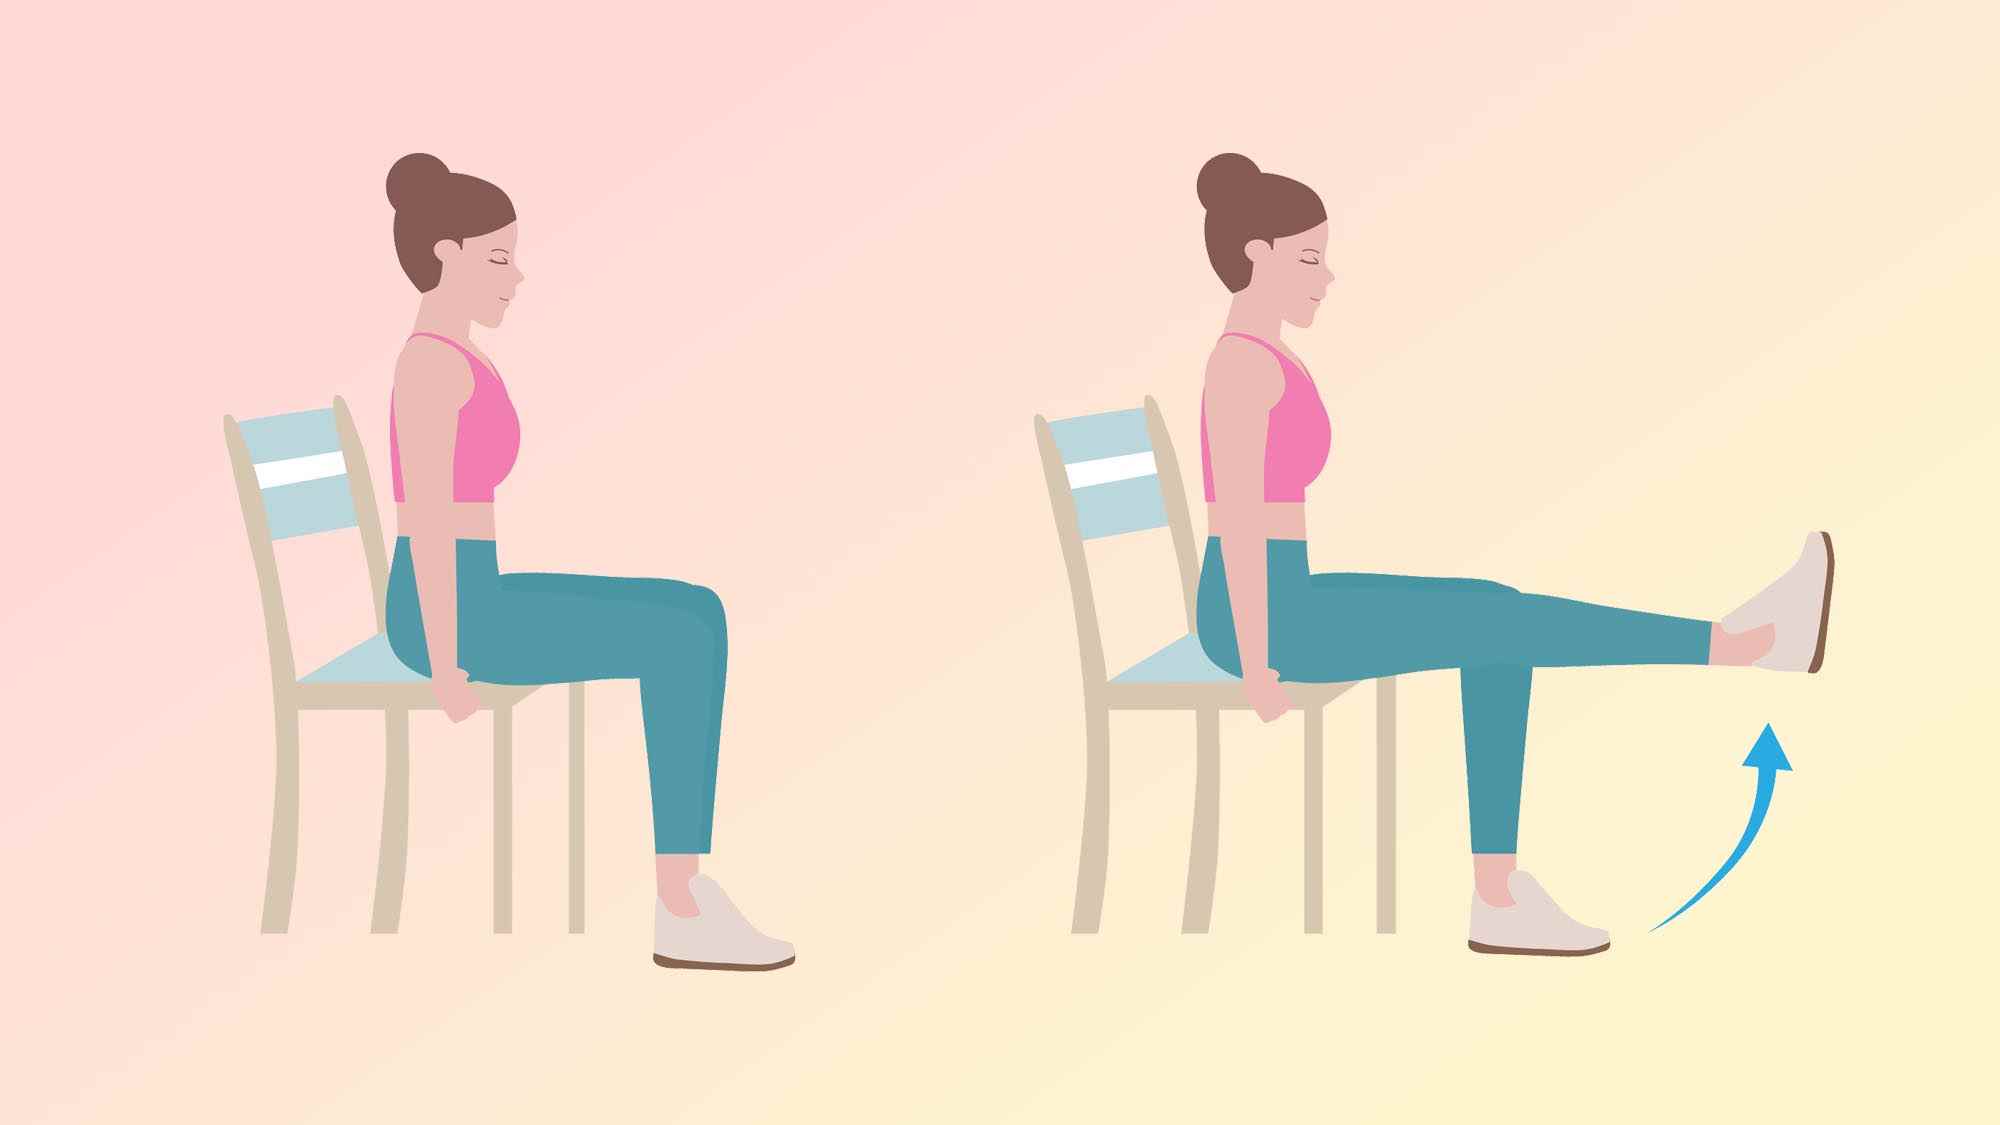 oturmuş bacak kaldırma yapan bir kadının bir illüstrasyonu